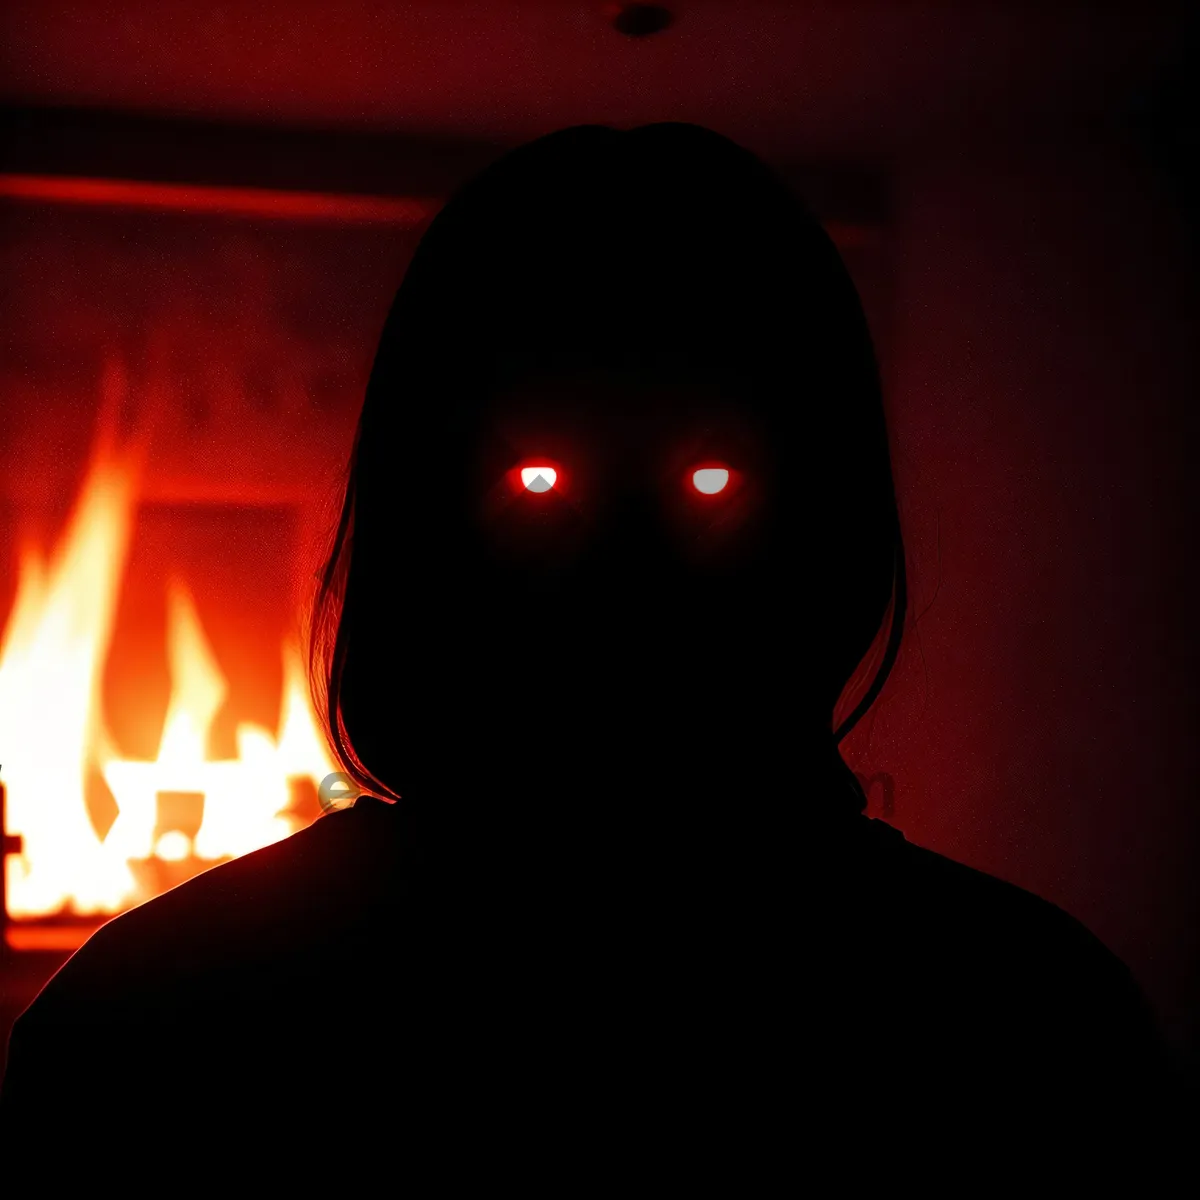 Picture of Fiery Inferno Illuminating Dark Halloween Night